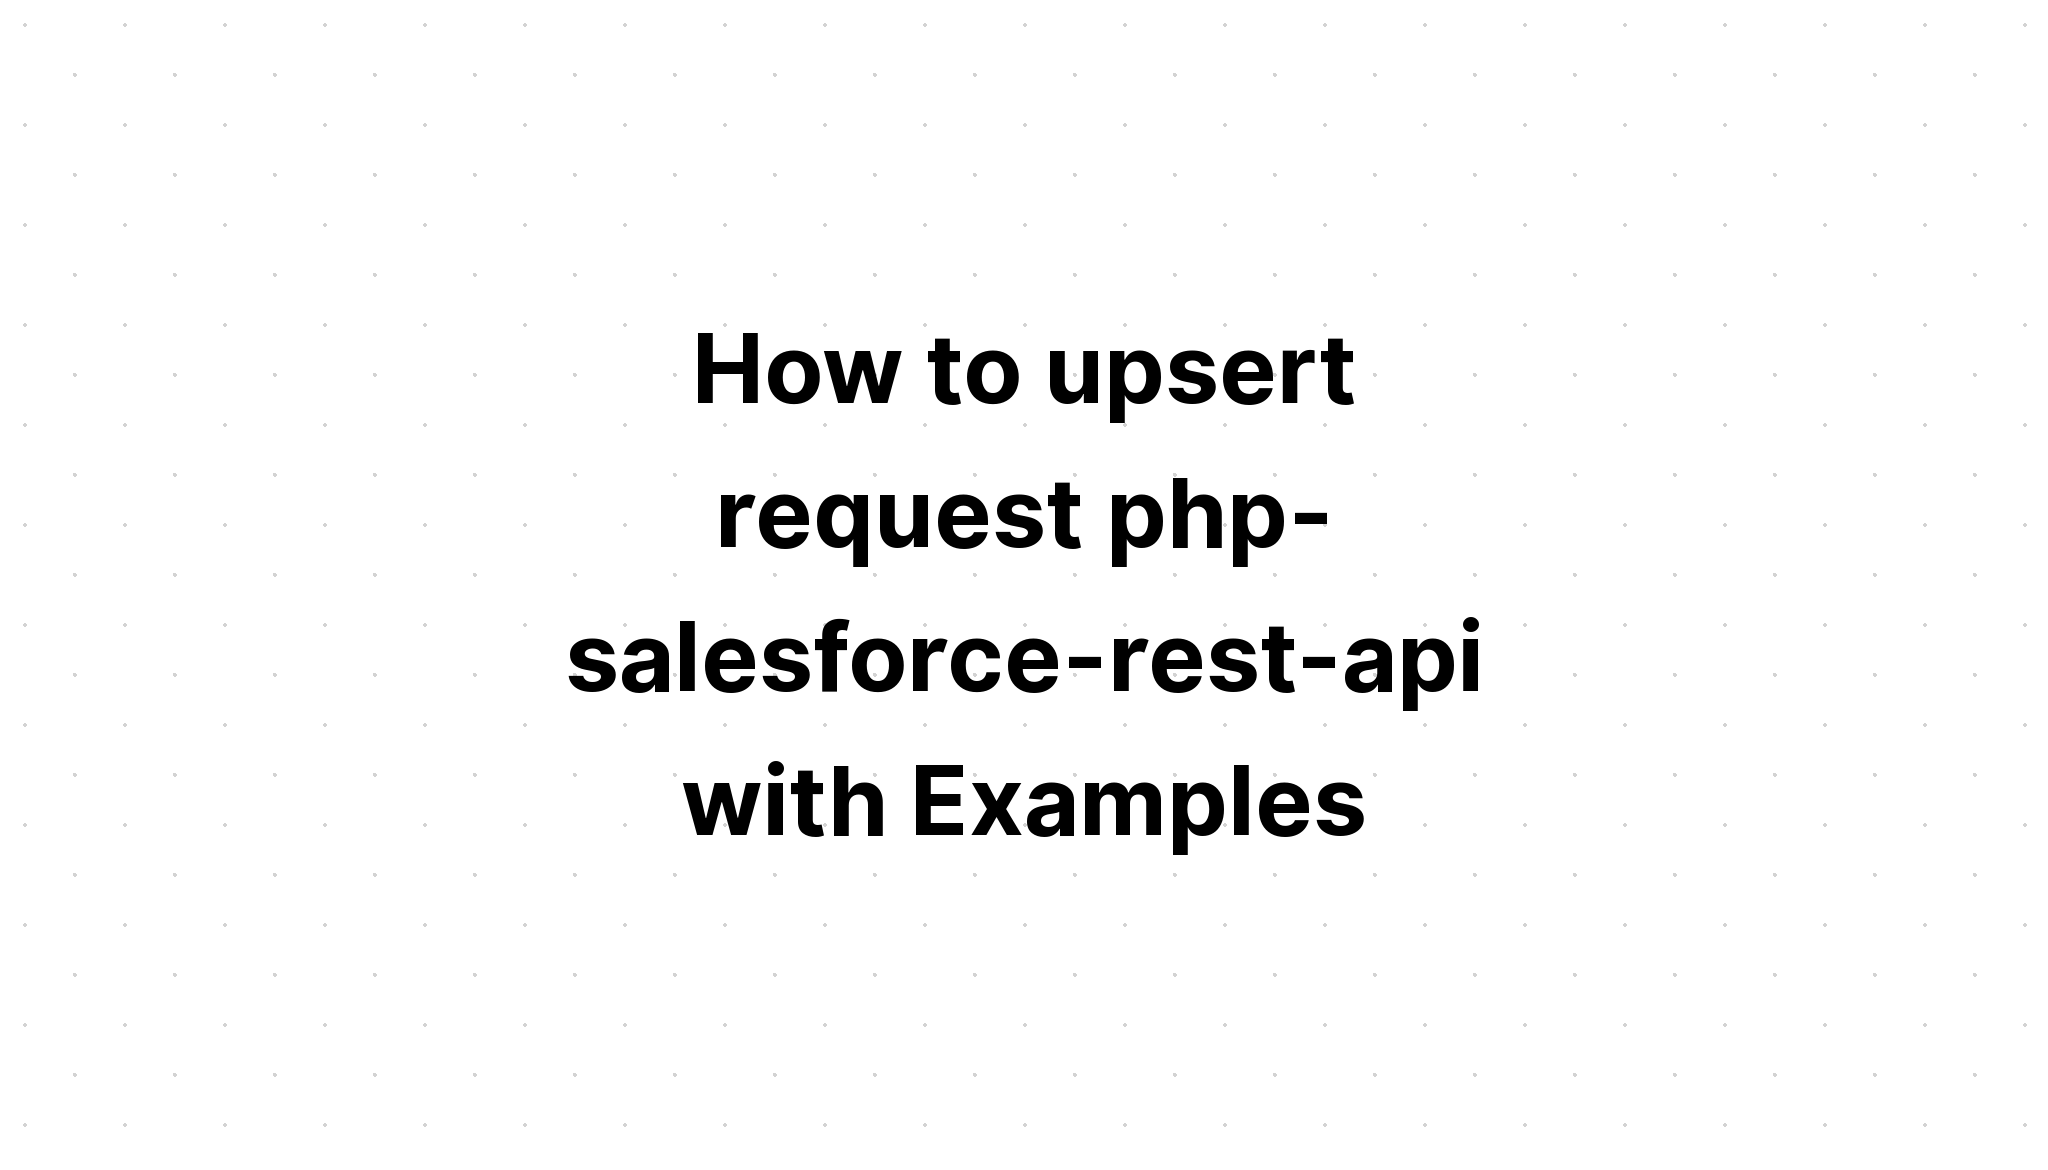 Cách upsert yêu cầu php-salesforce-rest-api với các ví dụ